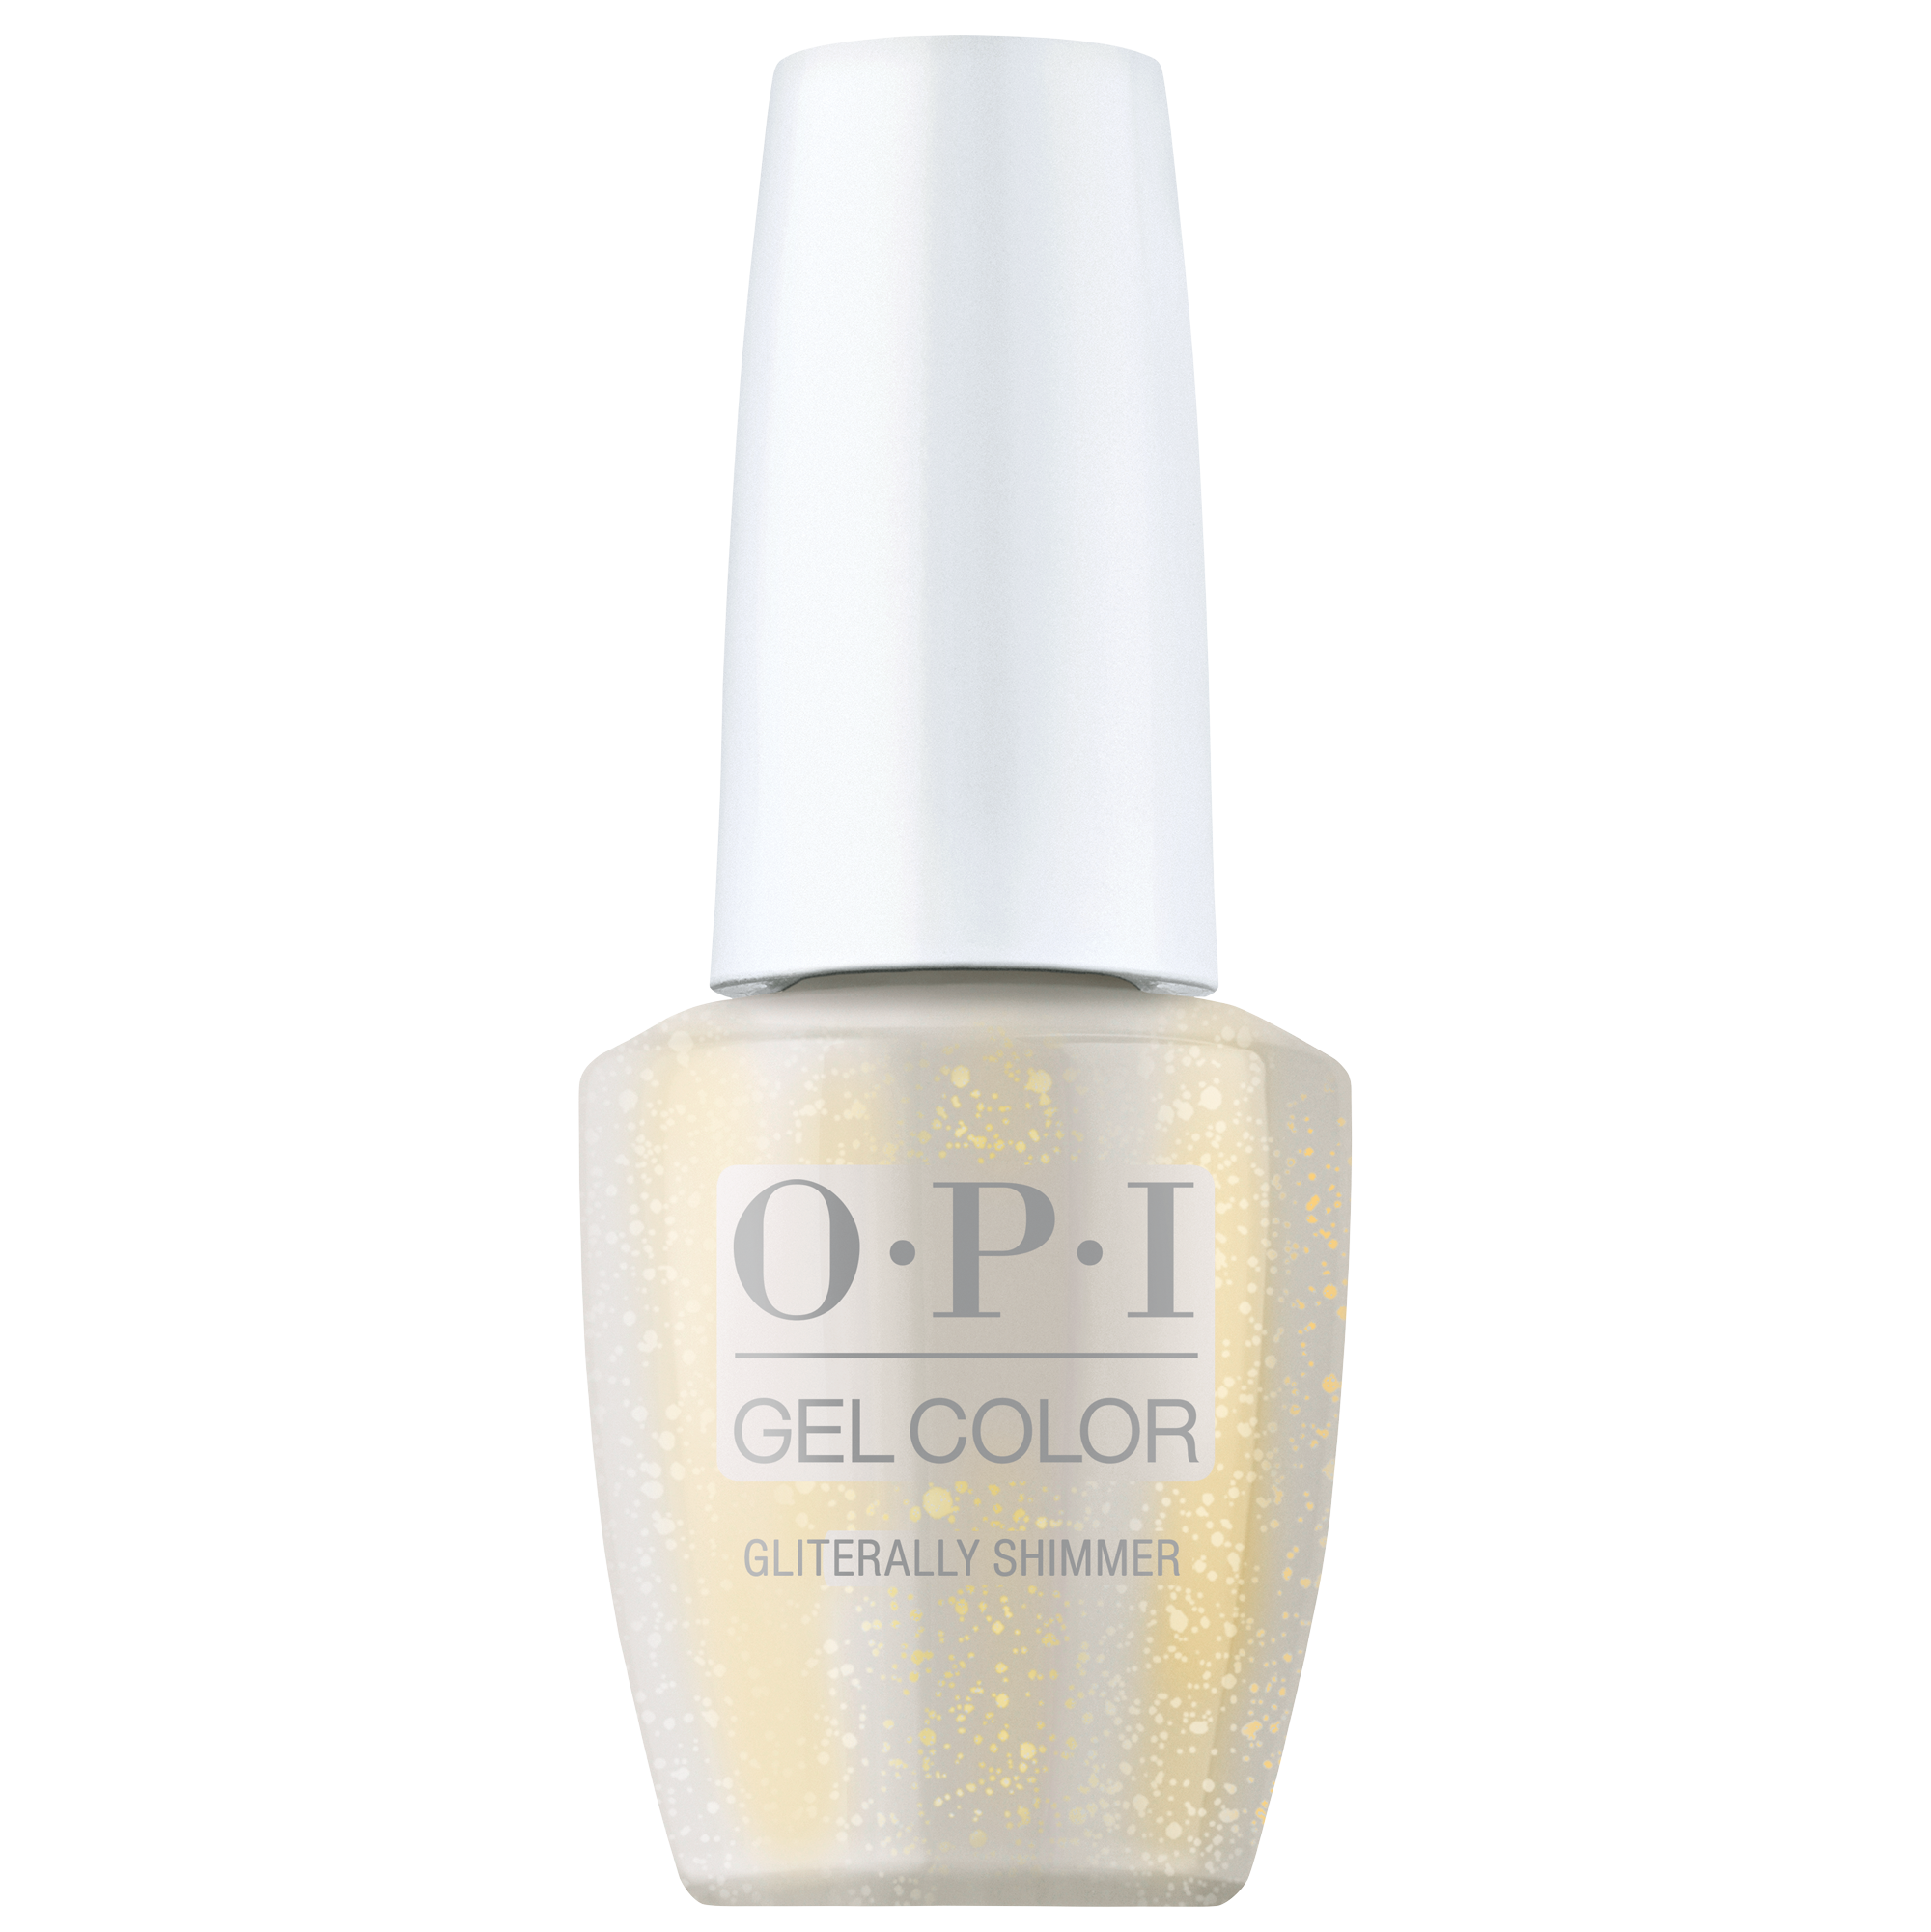 OPI Gel Color 360 - Gliterally Shimmer